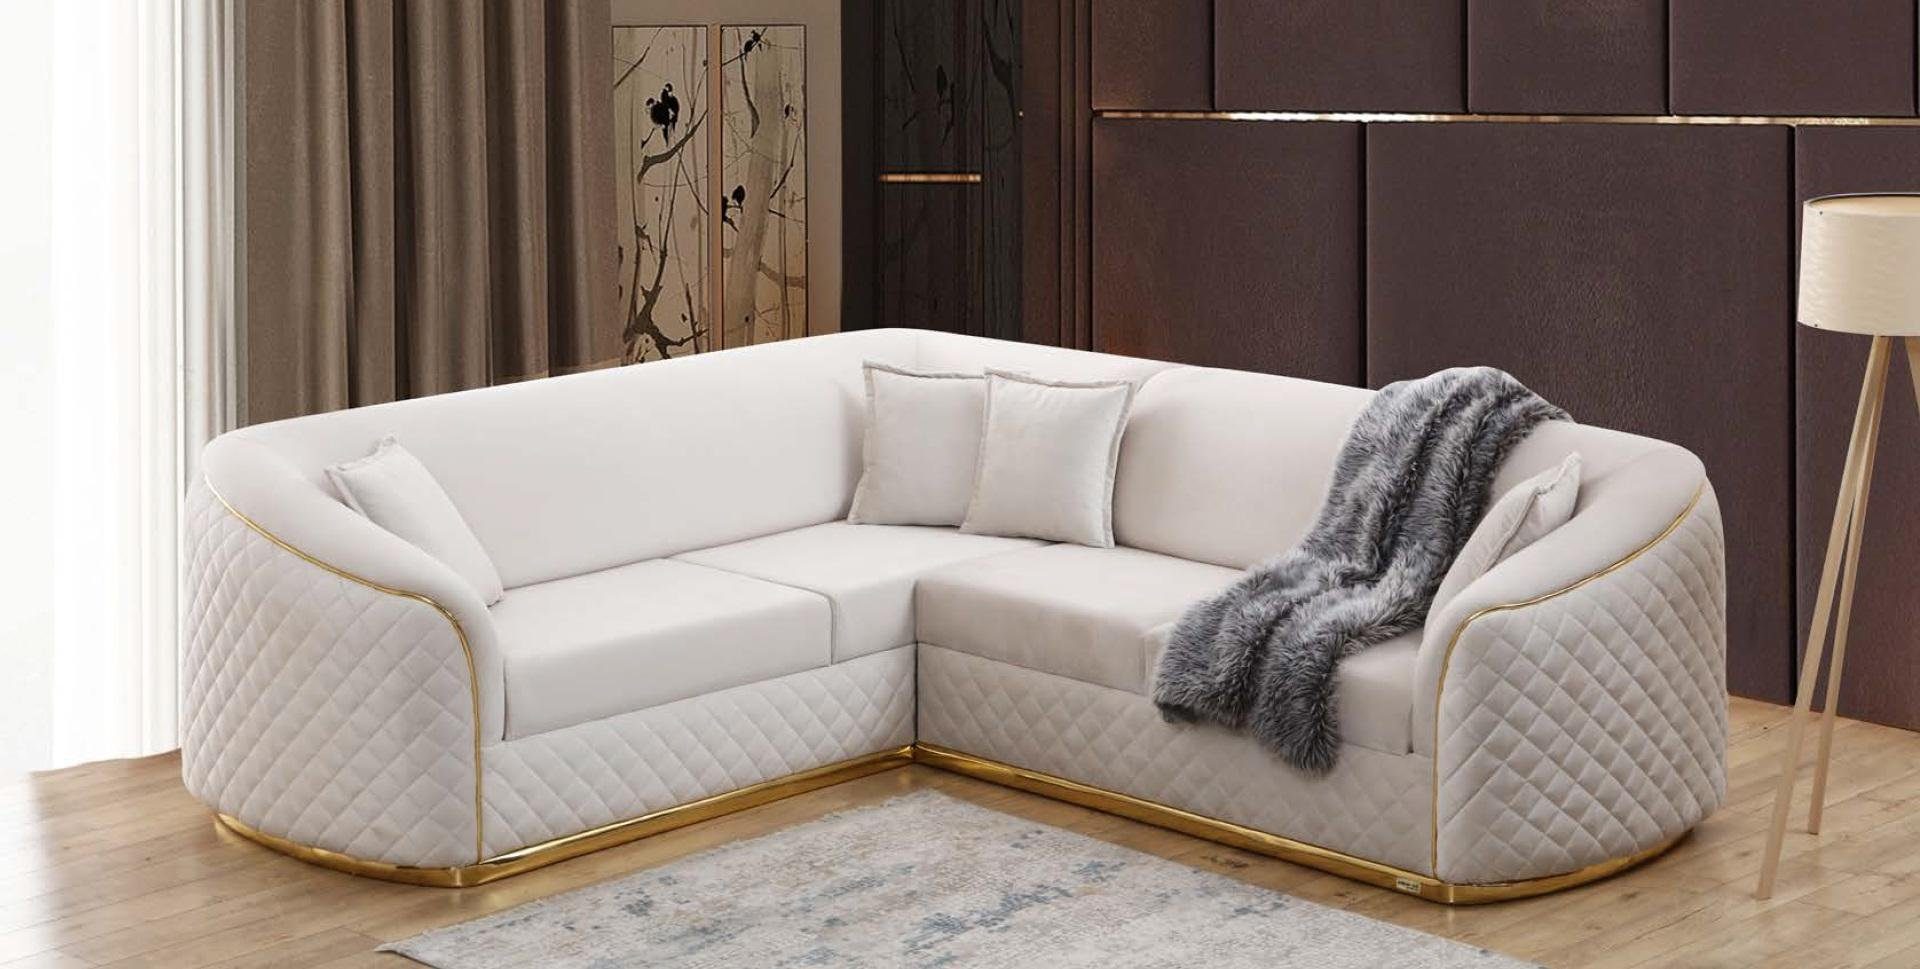 JVmoebel Ecksofa Design Eckcouch Wohnzimmer Ecksofa Eckgarnitur Textil Sofa Couch